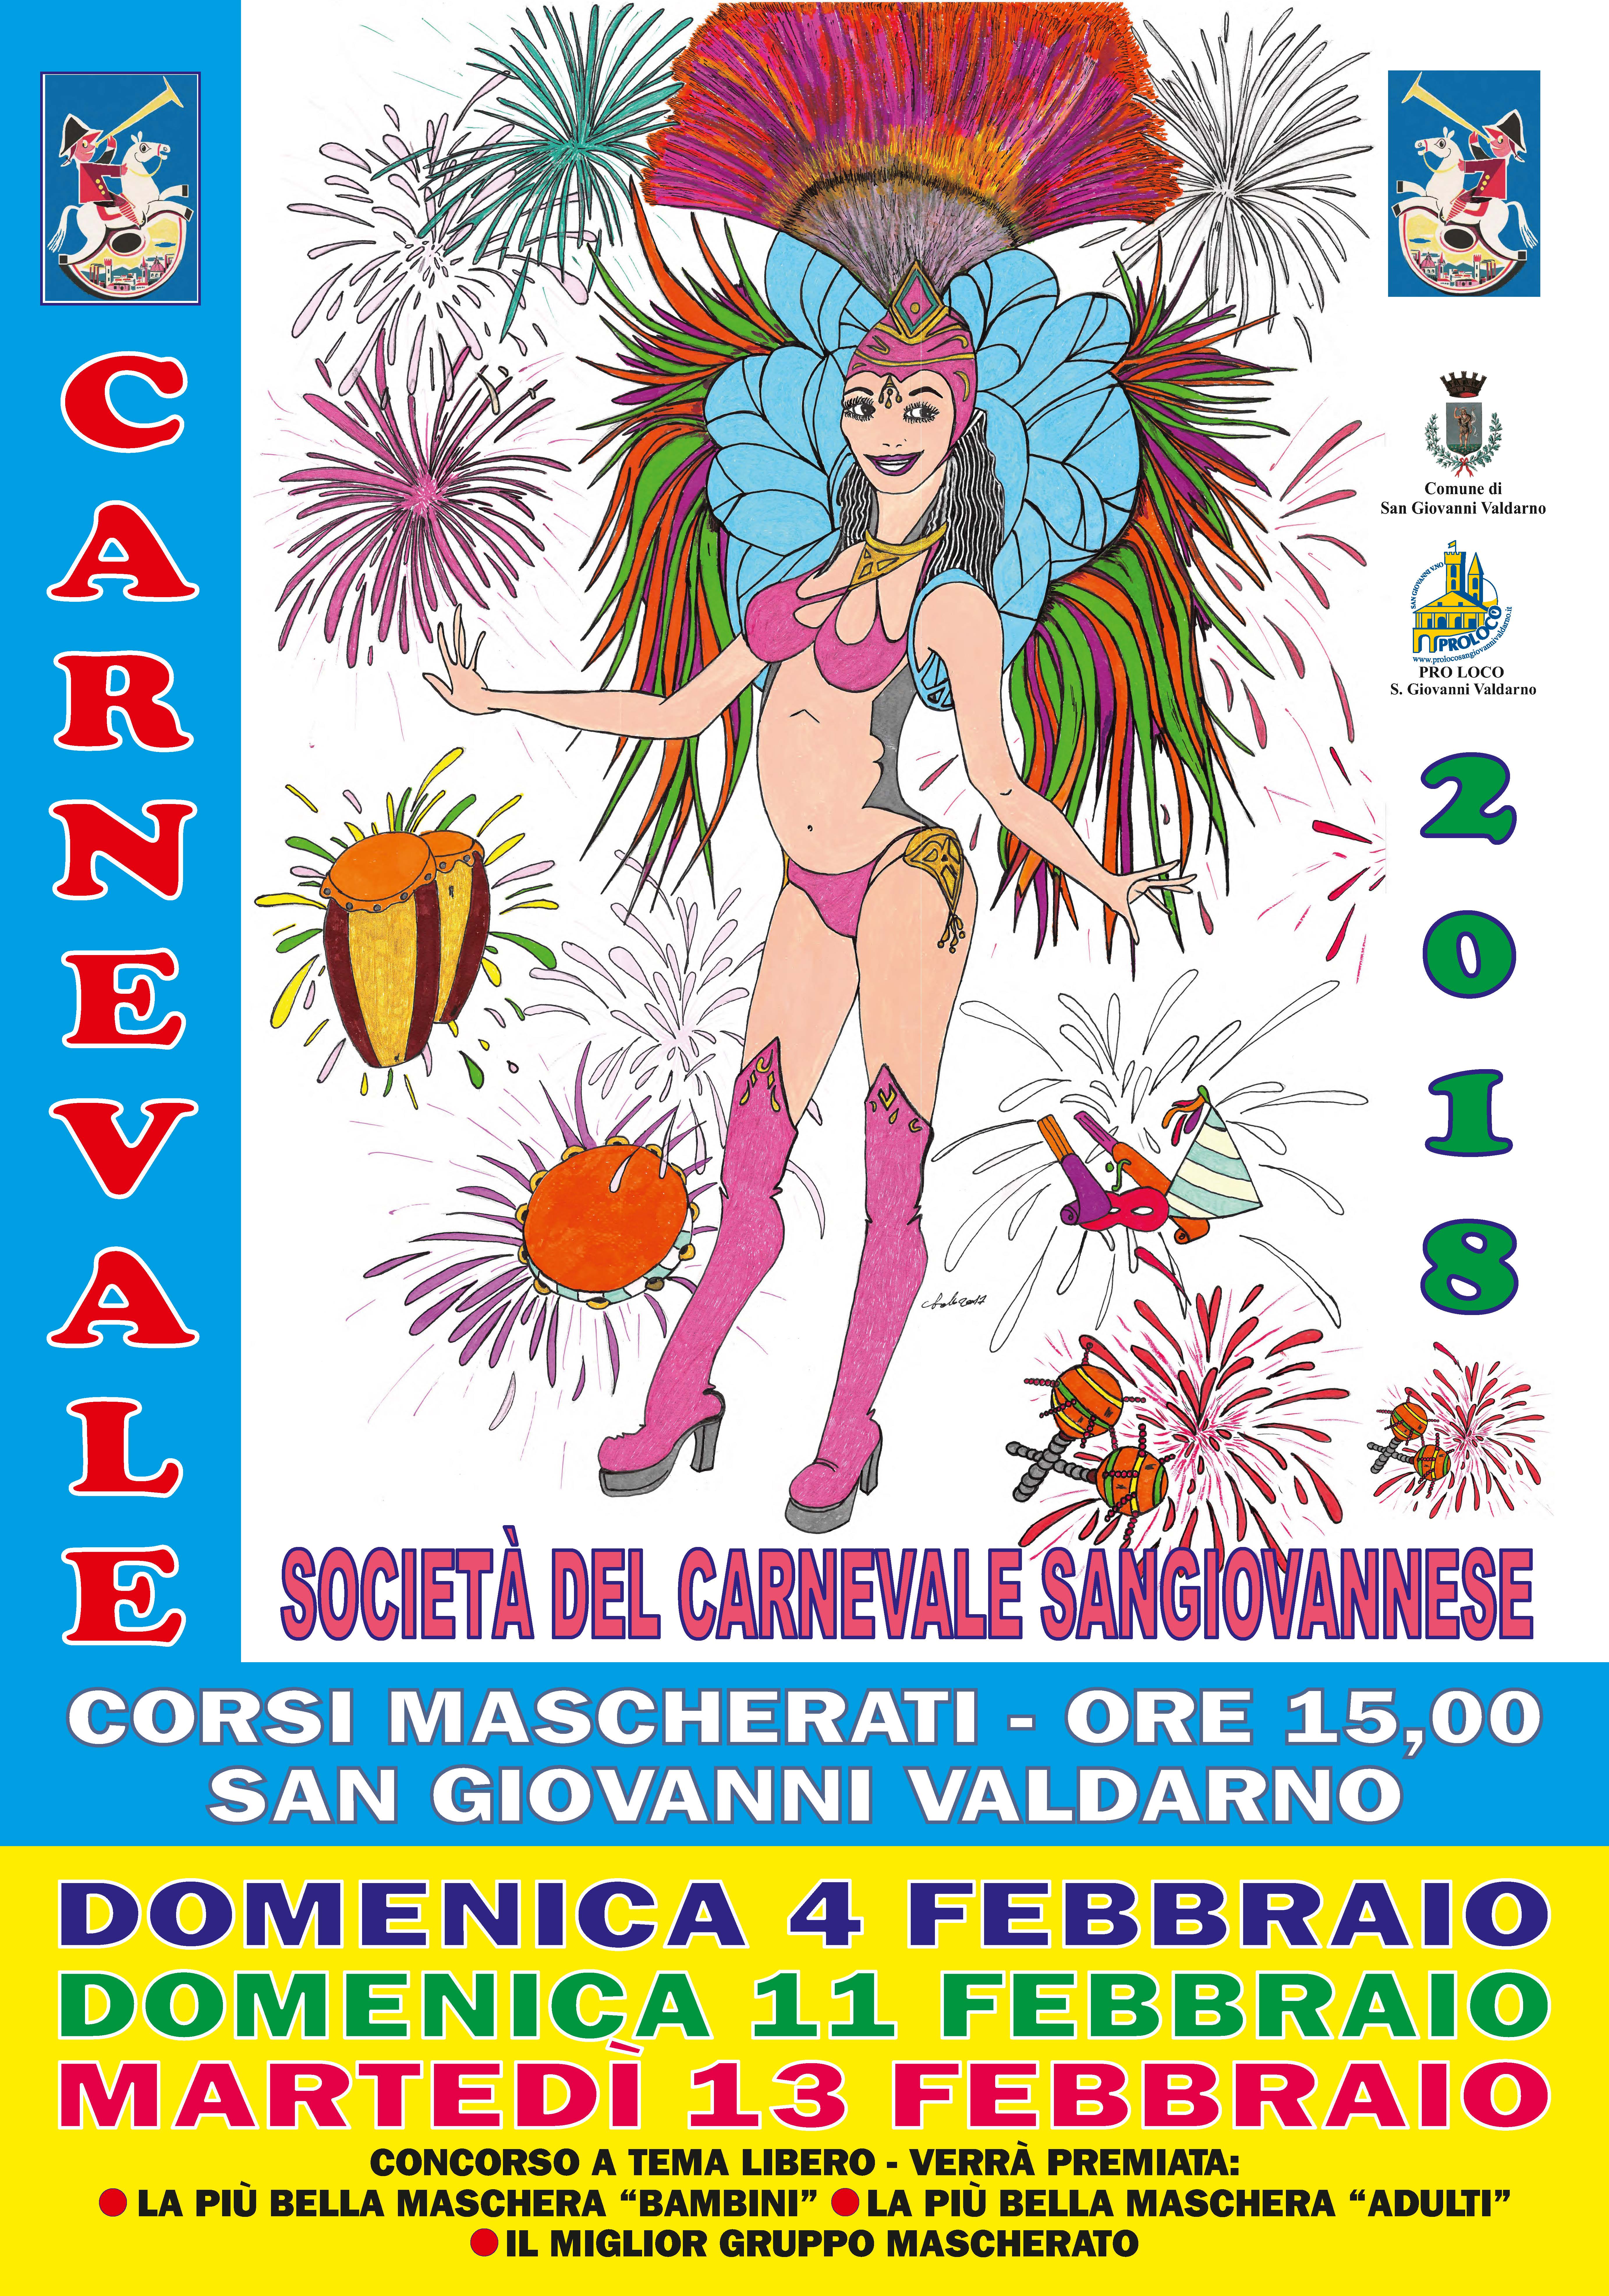 Carnevale Sangiovannese – Corsi Mascherati